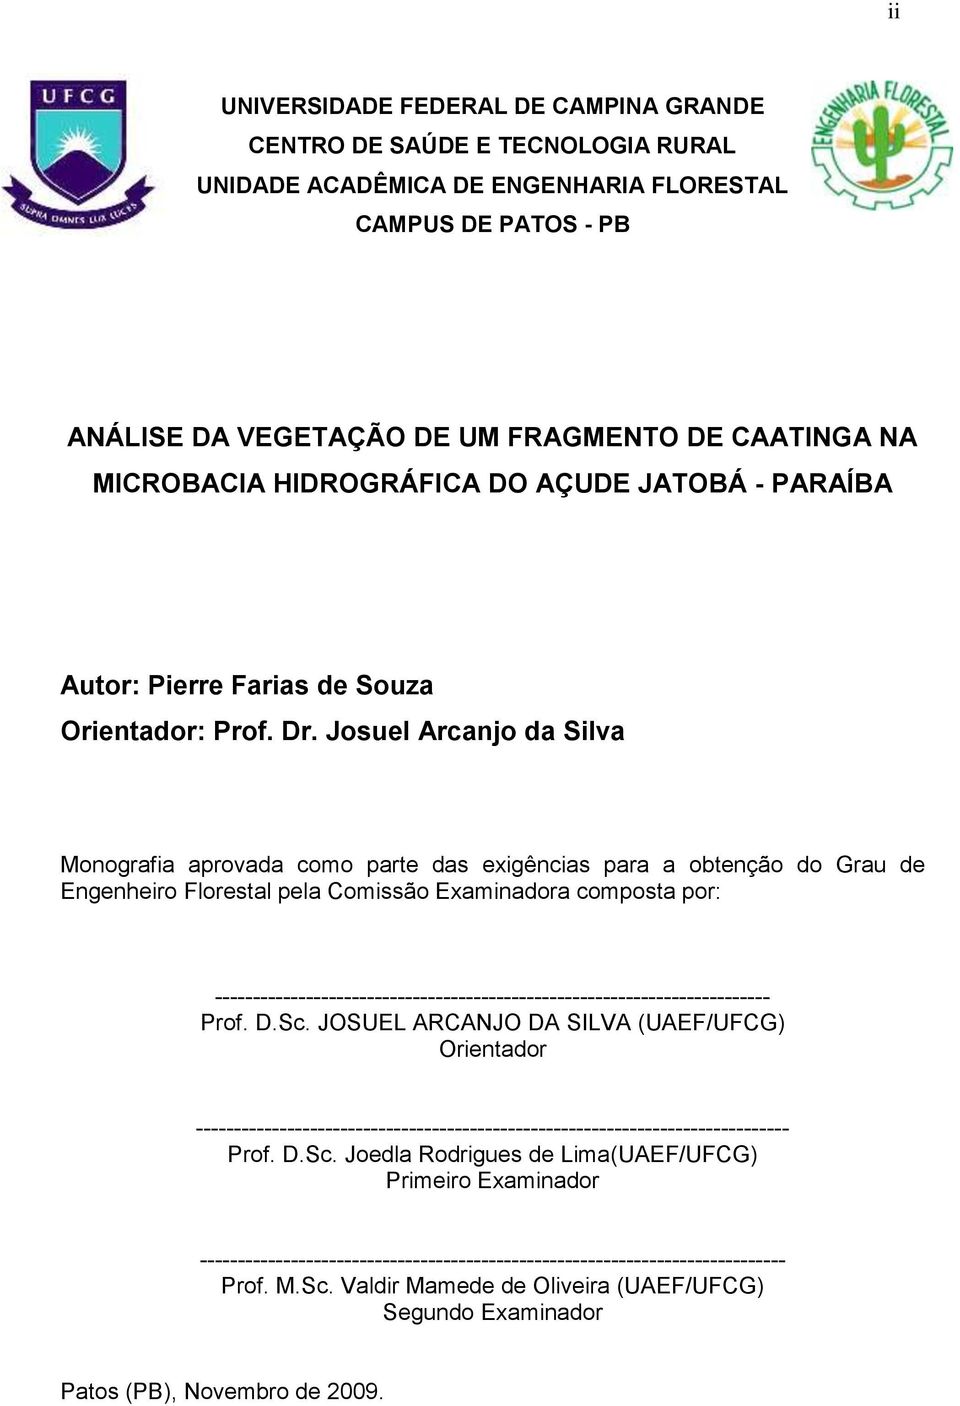 Josuel Arcanjo da Silva Monografia aprovada como parte das exigências para a obtenção do Grau de Engenheiro Florestal pela Comissão Examinadora composta por: